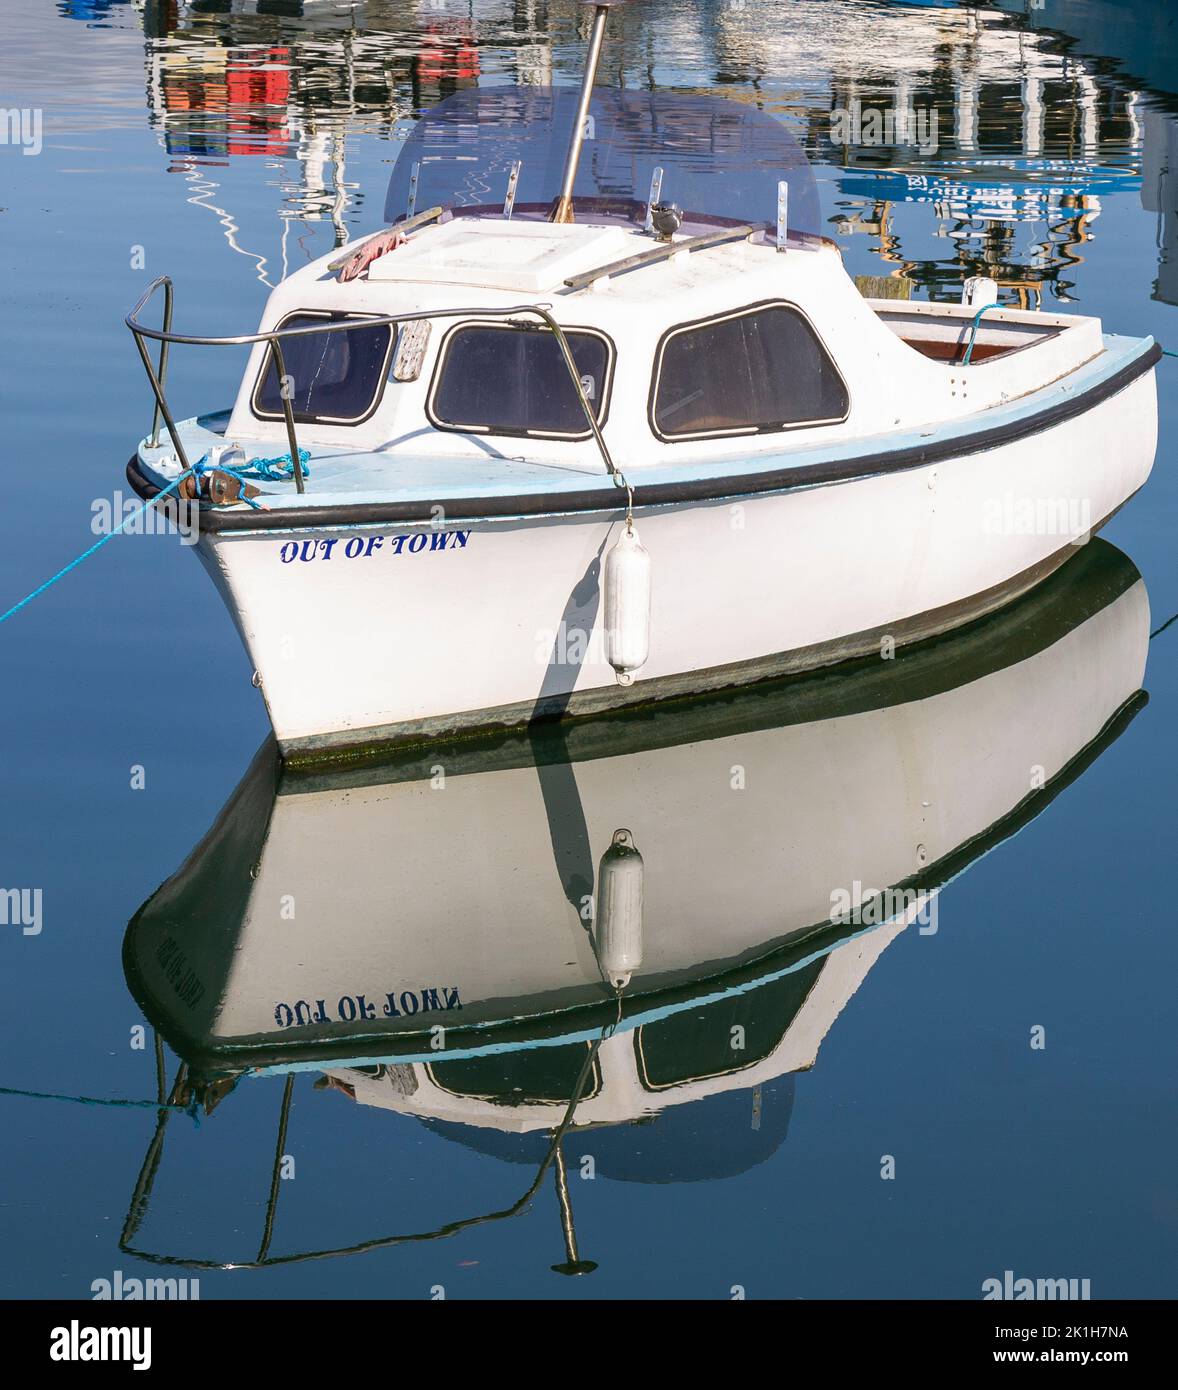 Réflexions du bateau dans une eau plate et calme Banque D'Images